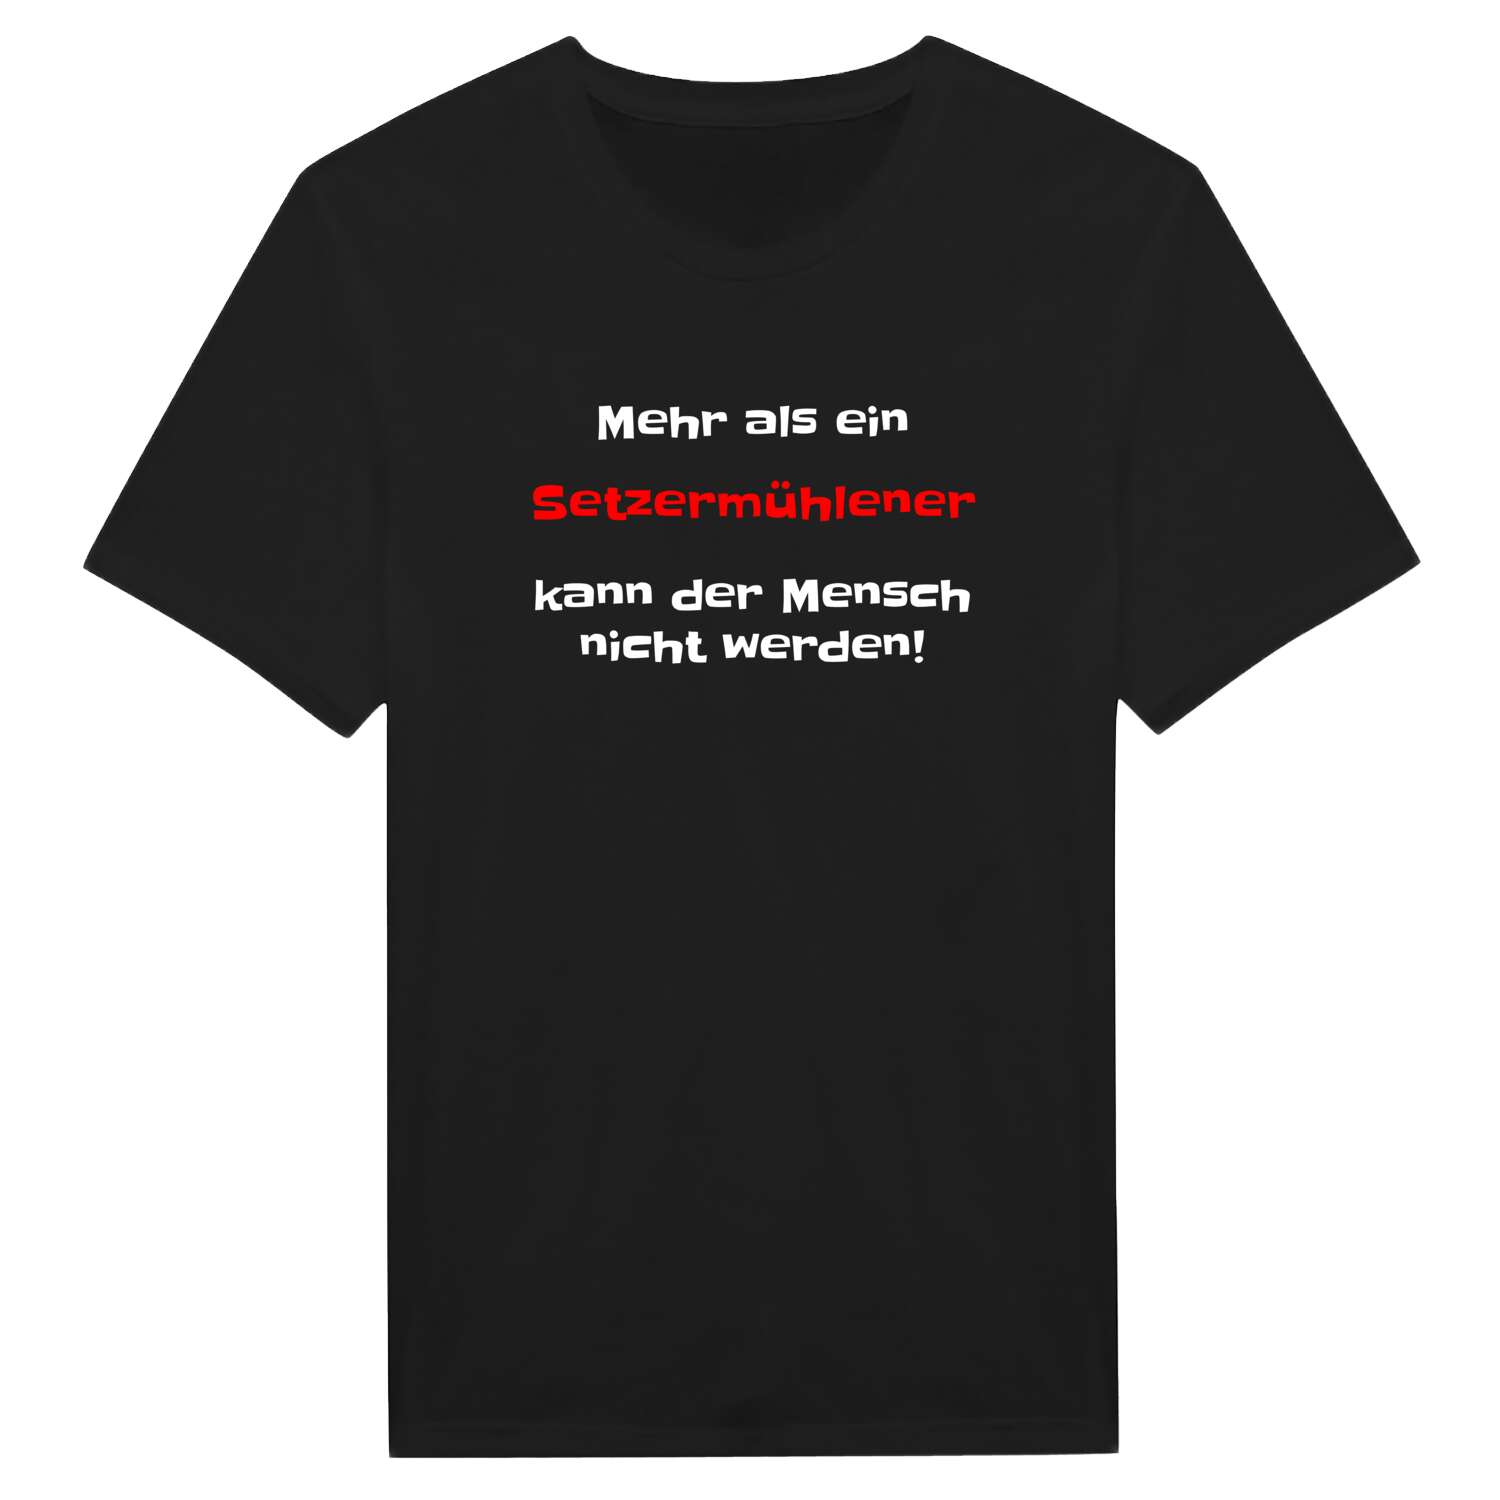 Setzermühle T-Shirt »Mehr als ein«